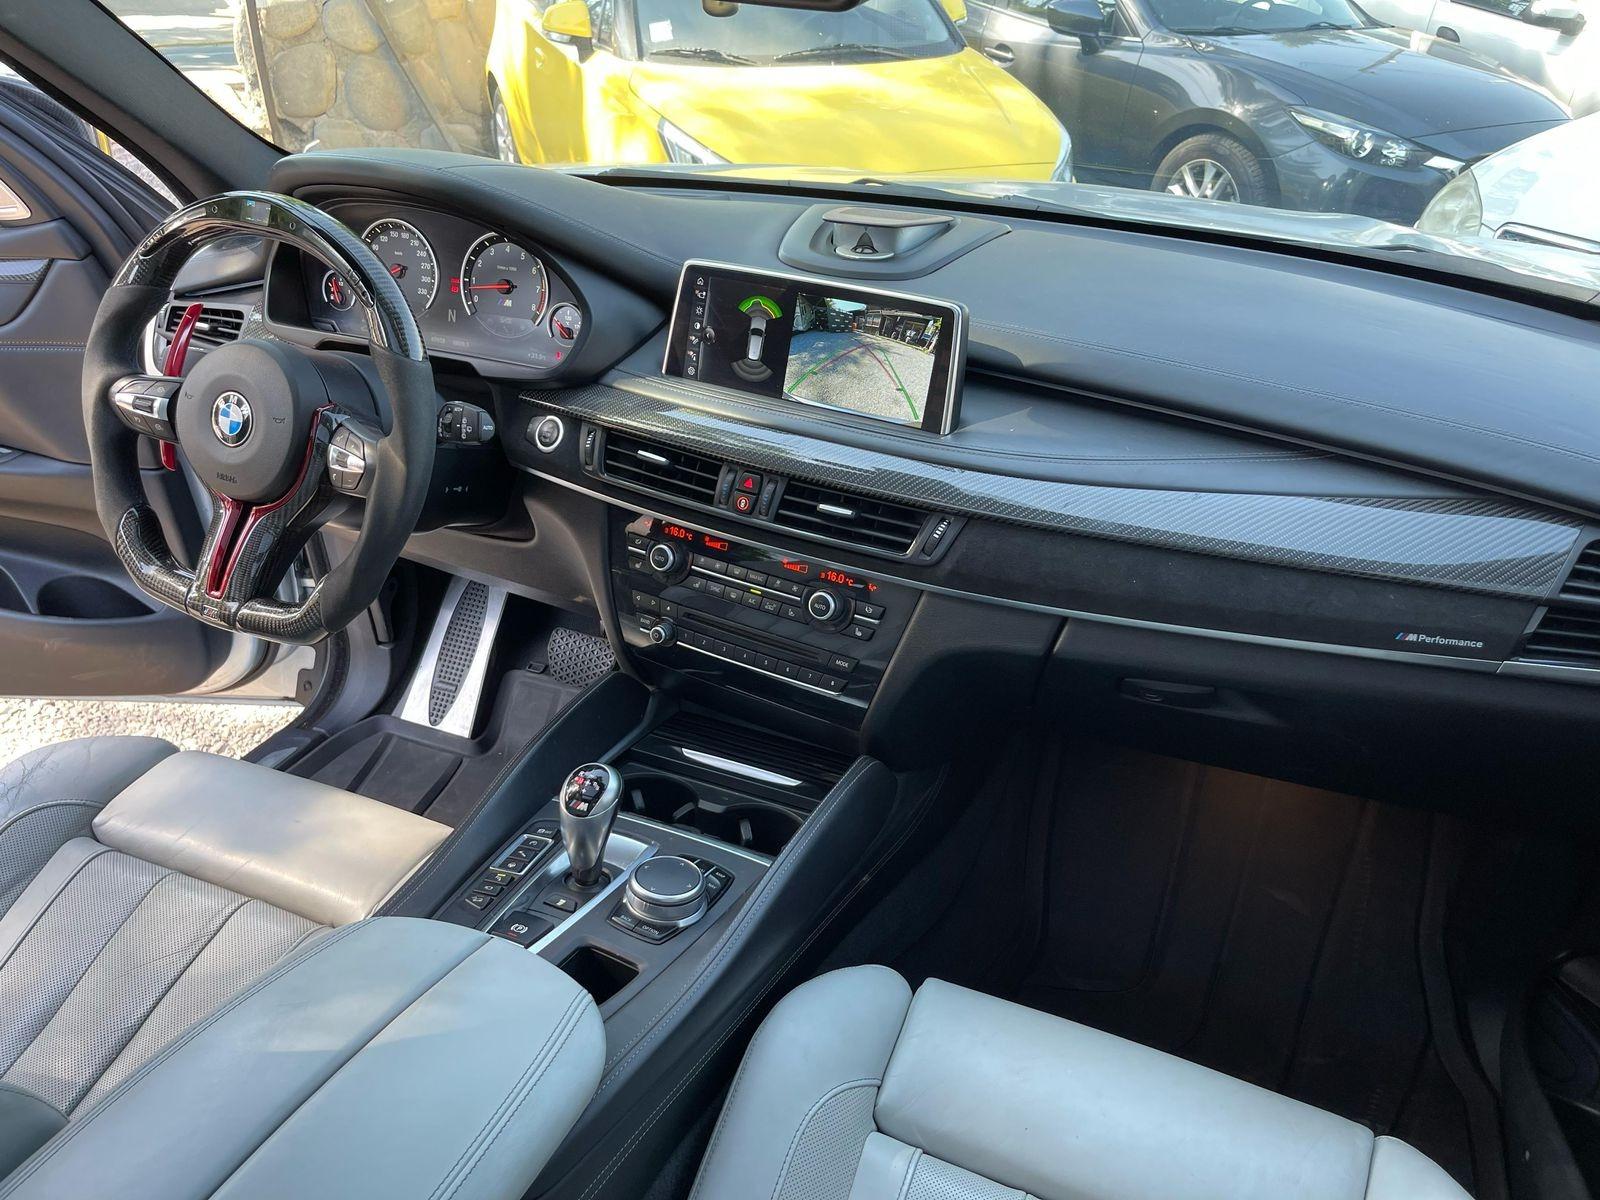 BMW X5 M 2018 4.400 CC - MALBEC AUTOMOTRIZ